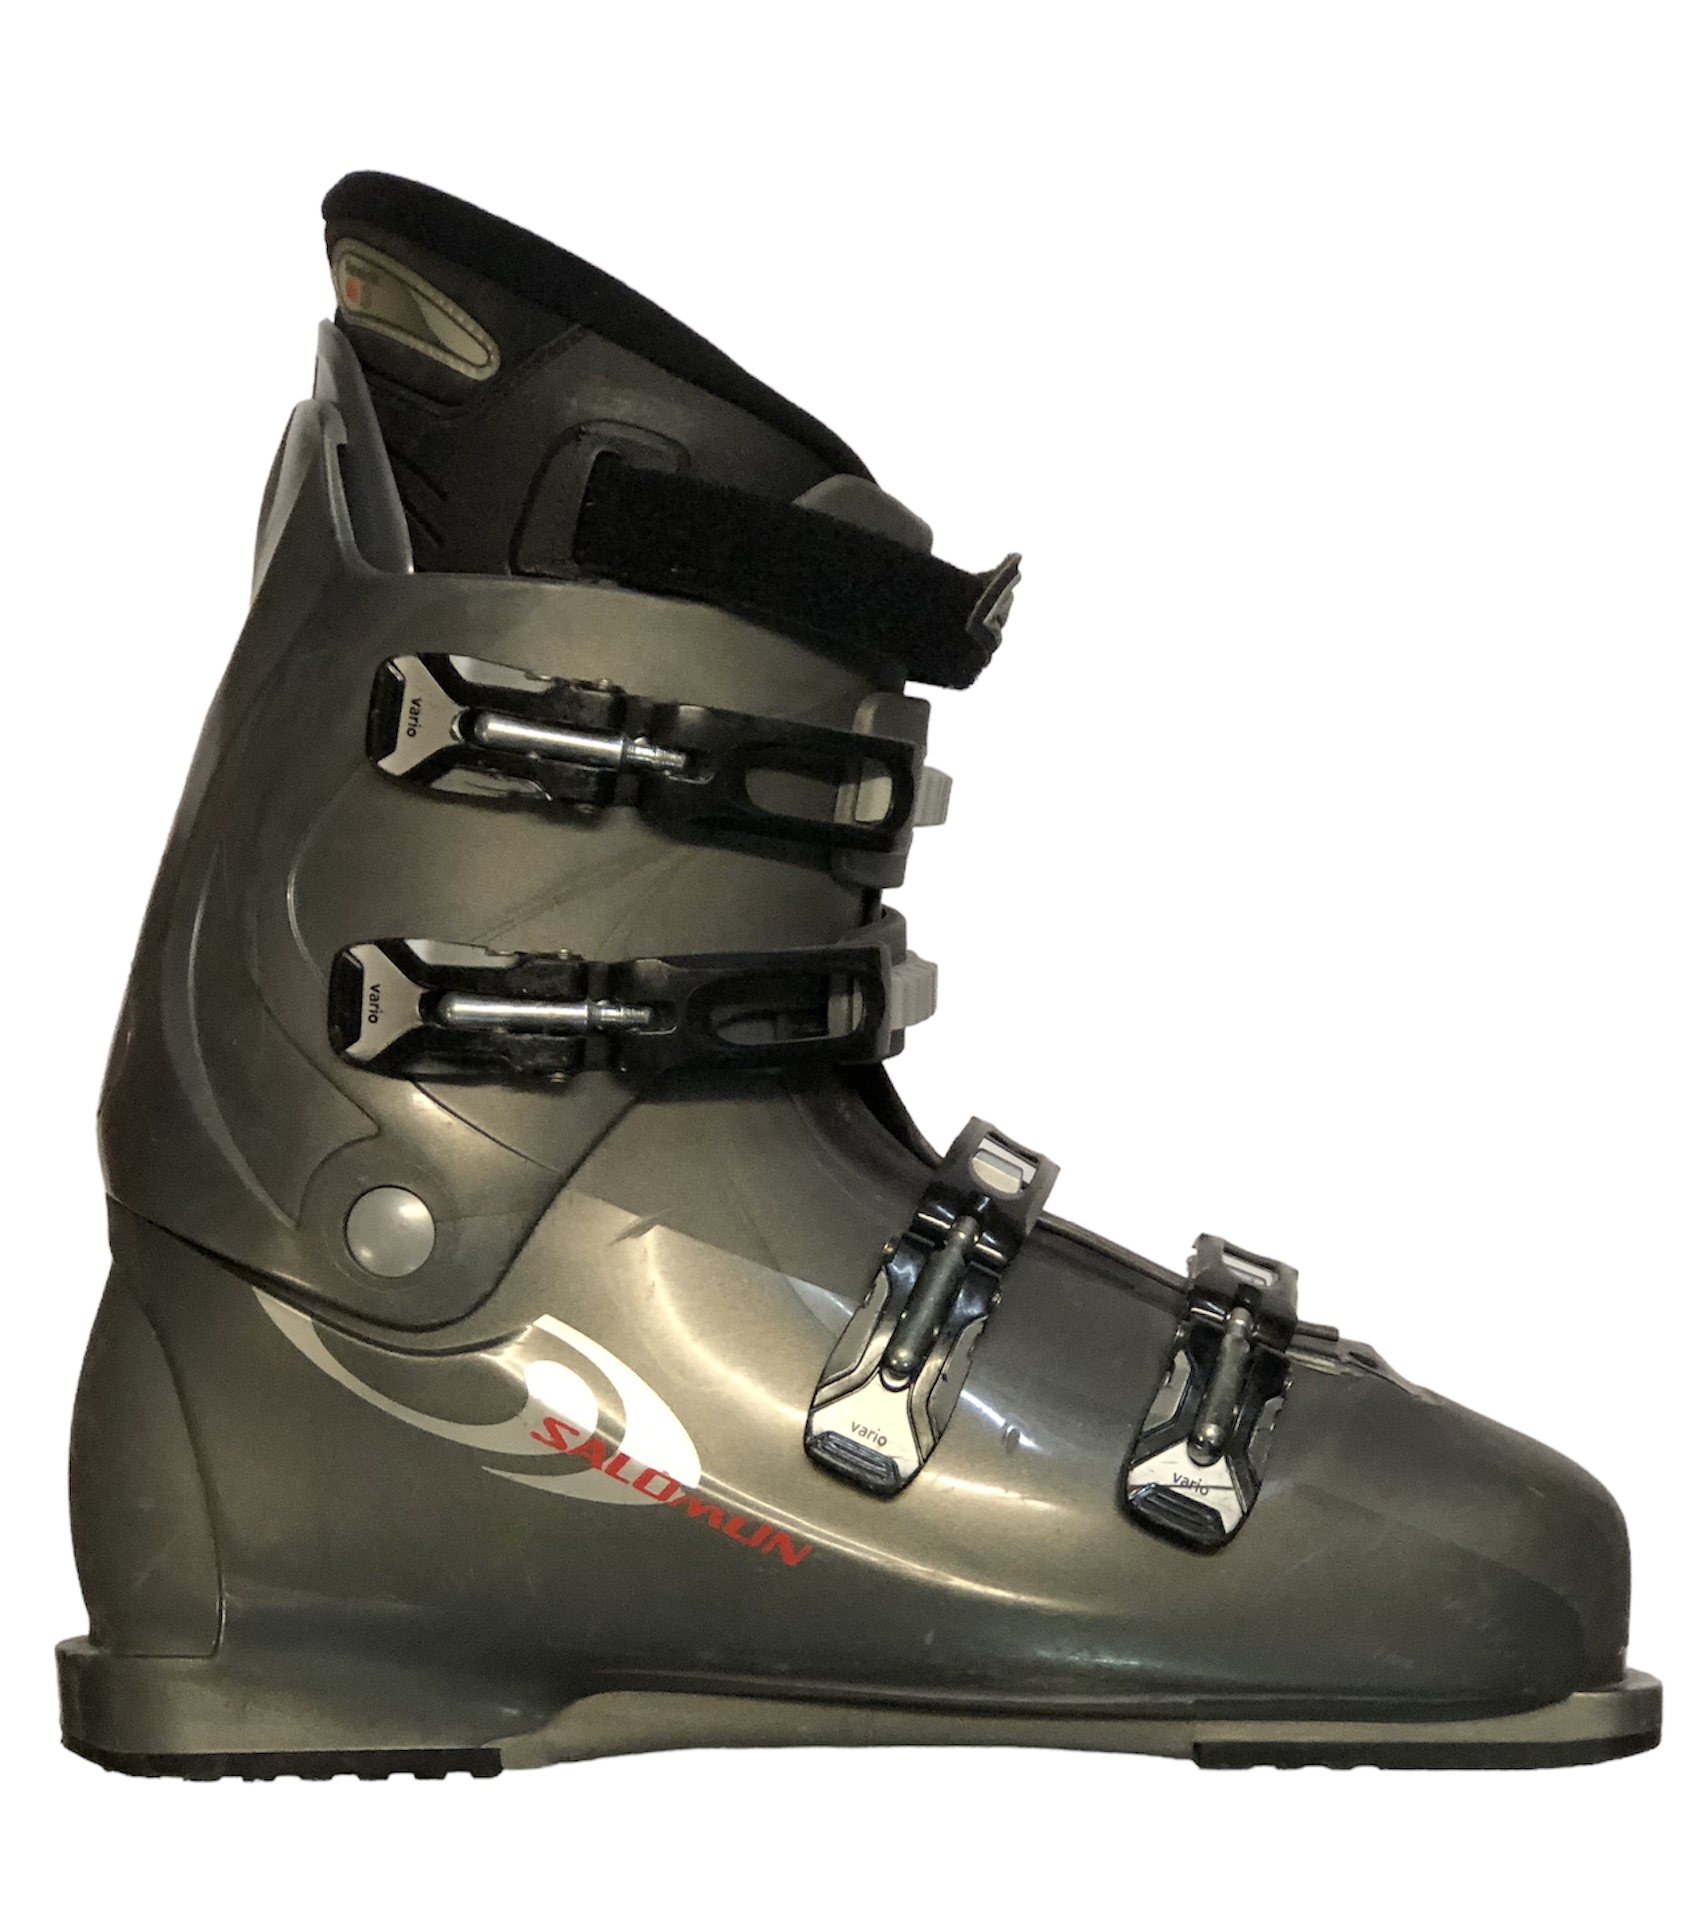 Używane buty narciarskie SALOMON 25,5/295mm rozmiar 39 :: Sklep Sportowy -  outlet sportowy, koncówki kolekcji, wyprzedaże, narty, deski, wiązania,  sprzet narciarski, buty sportowe